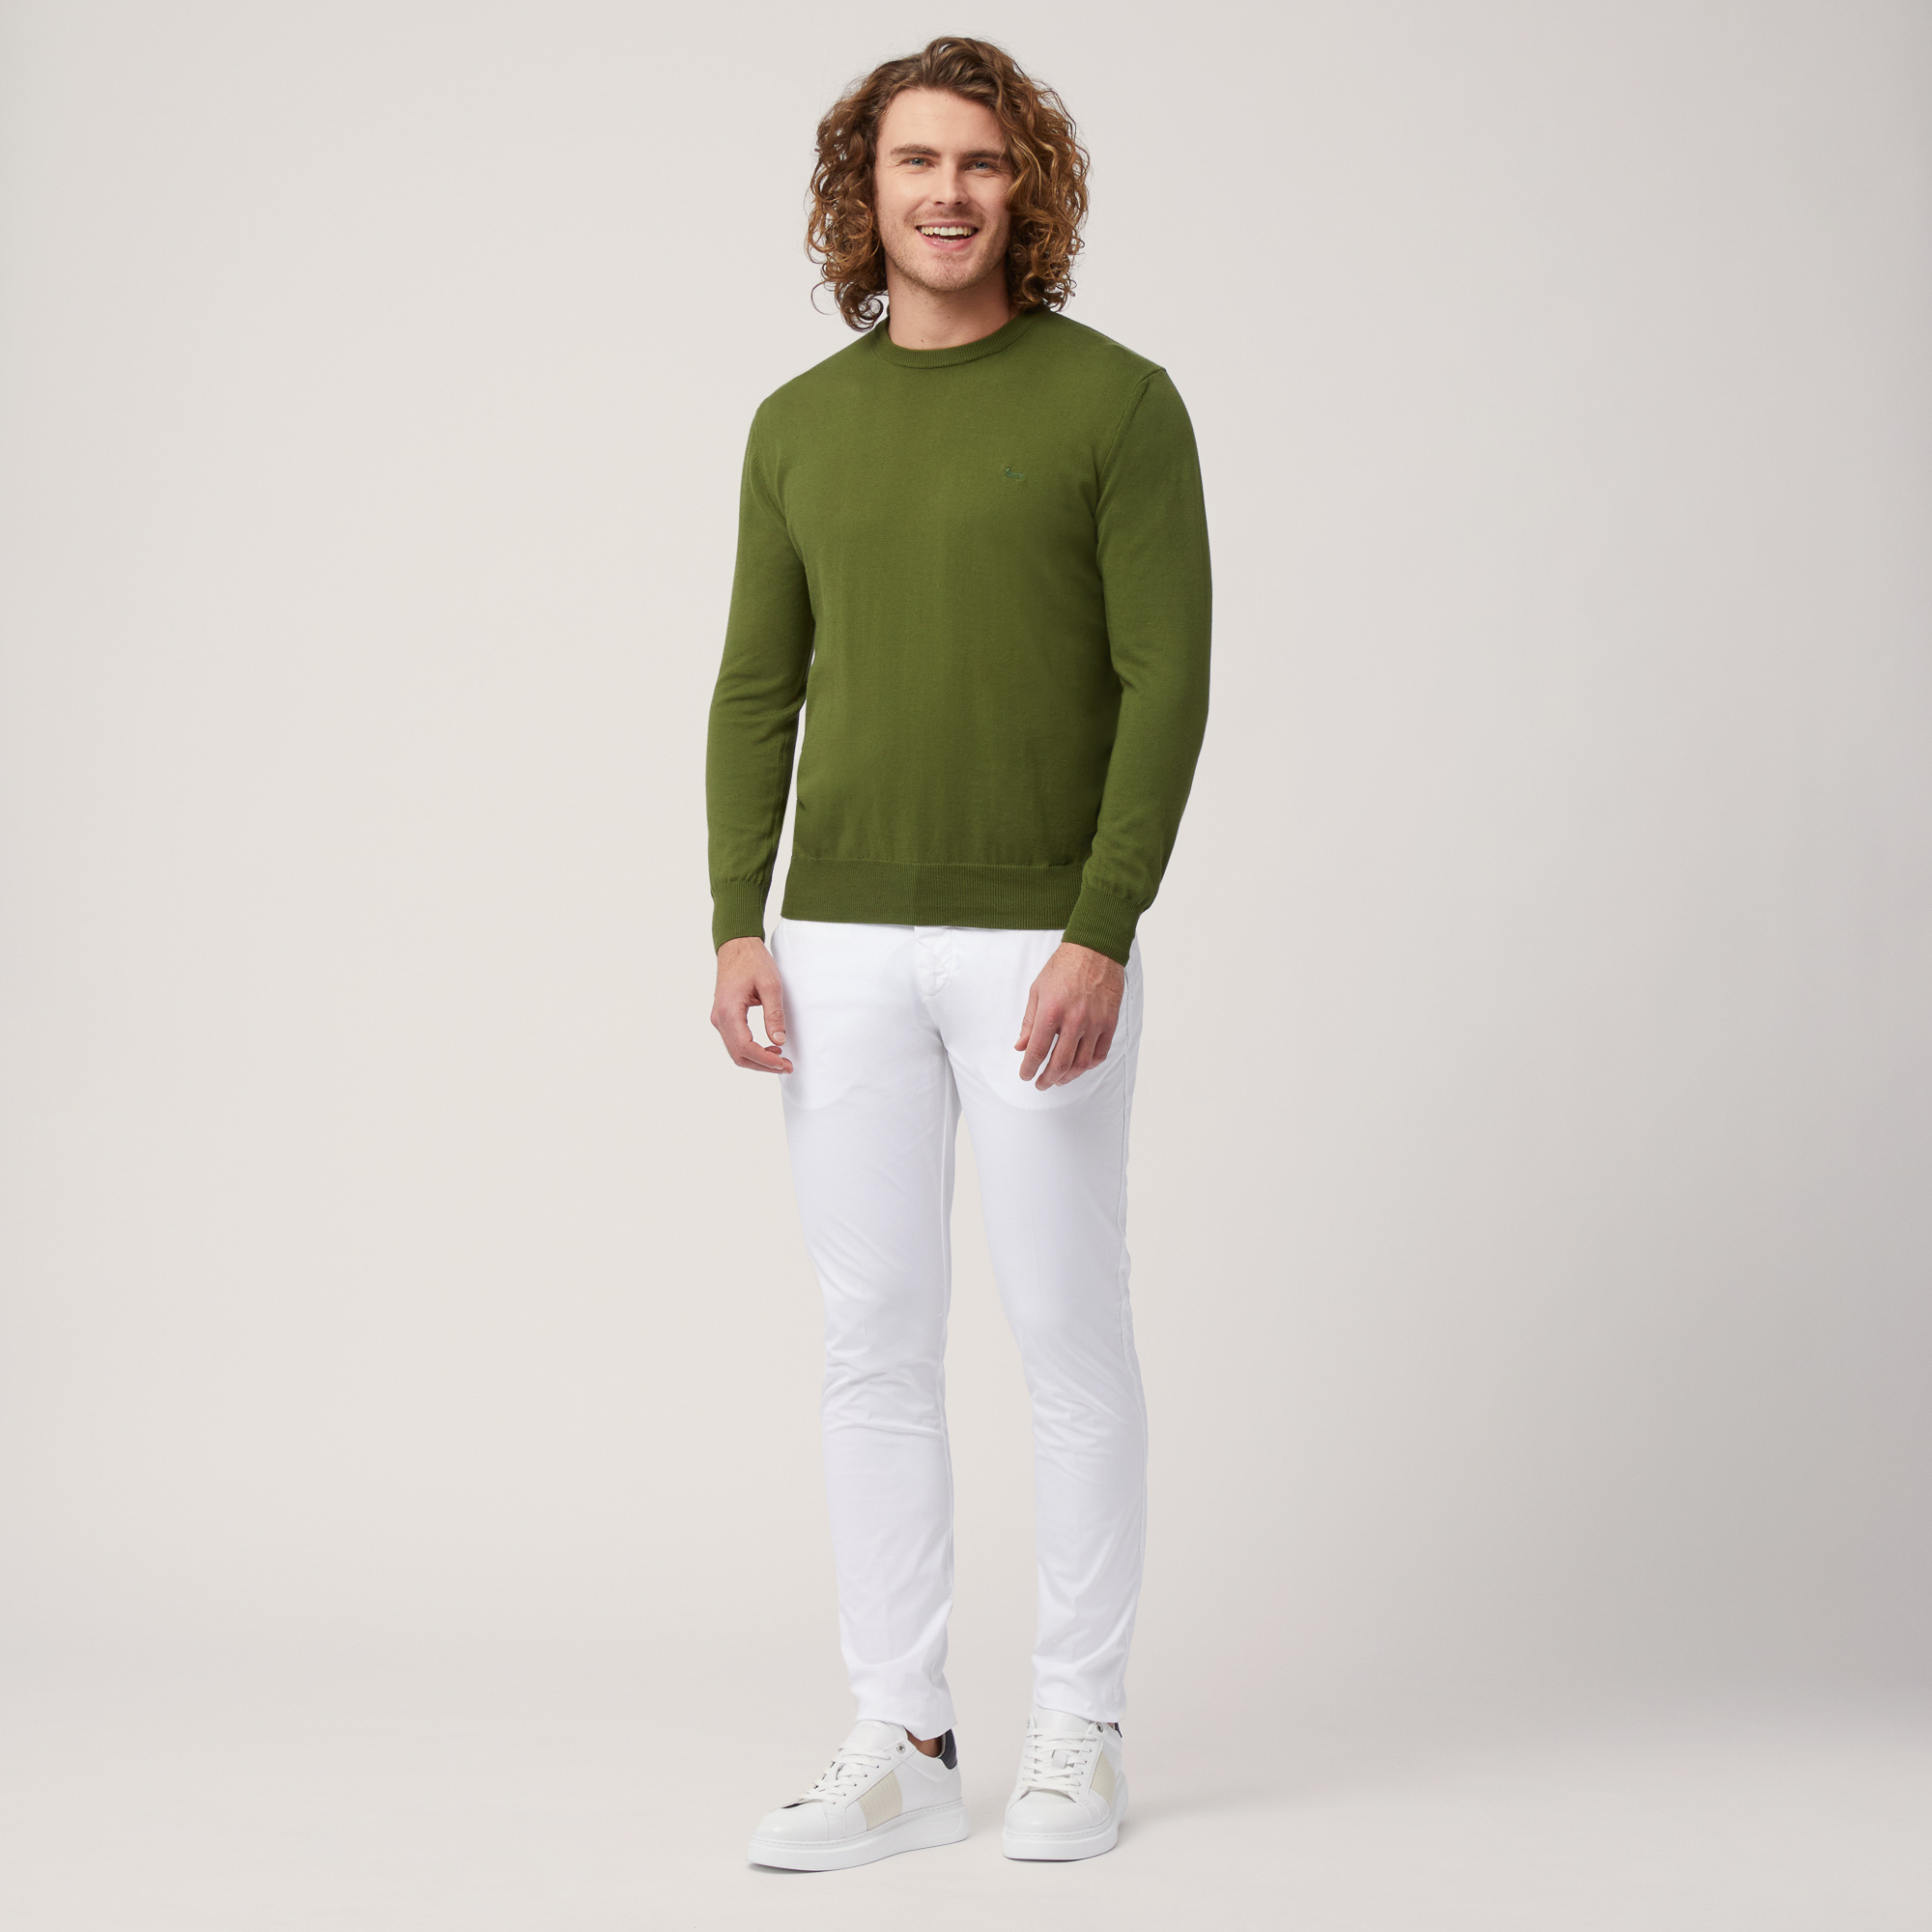 Pullover mit Rundhalsausschnitt aus Baumwolle, Grün, large image number 3